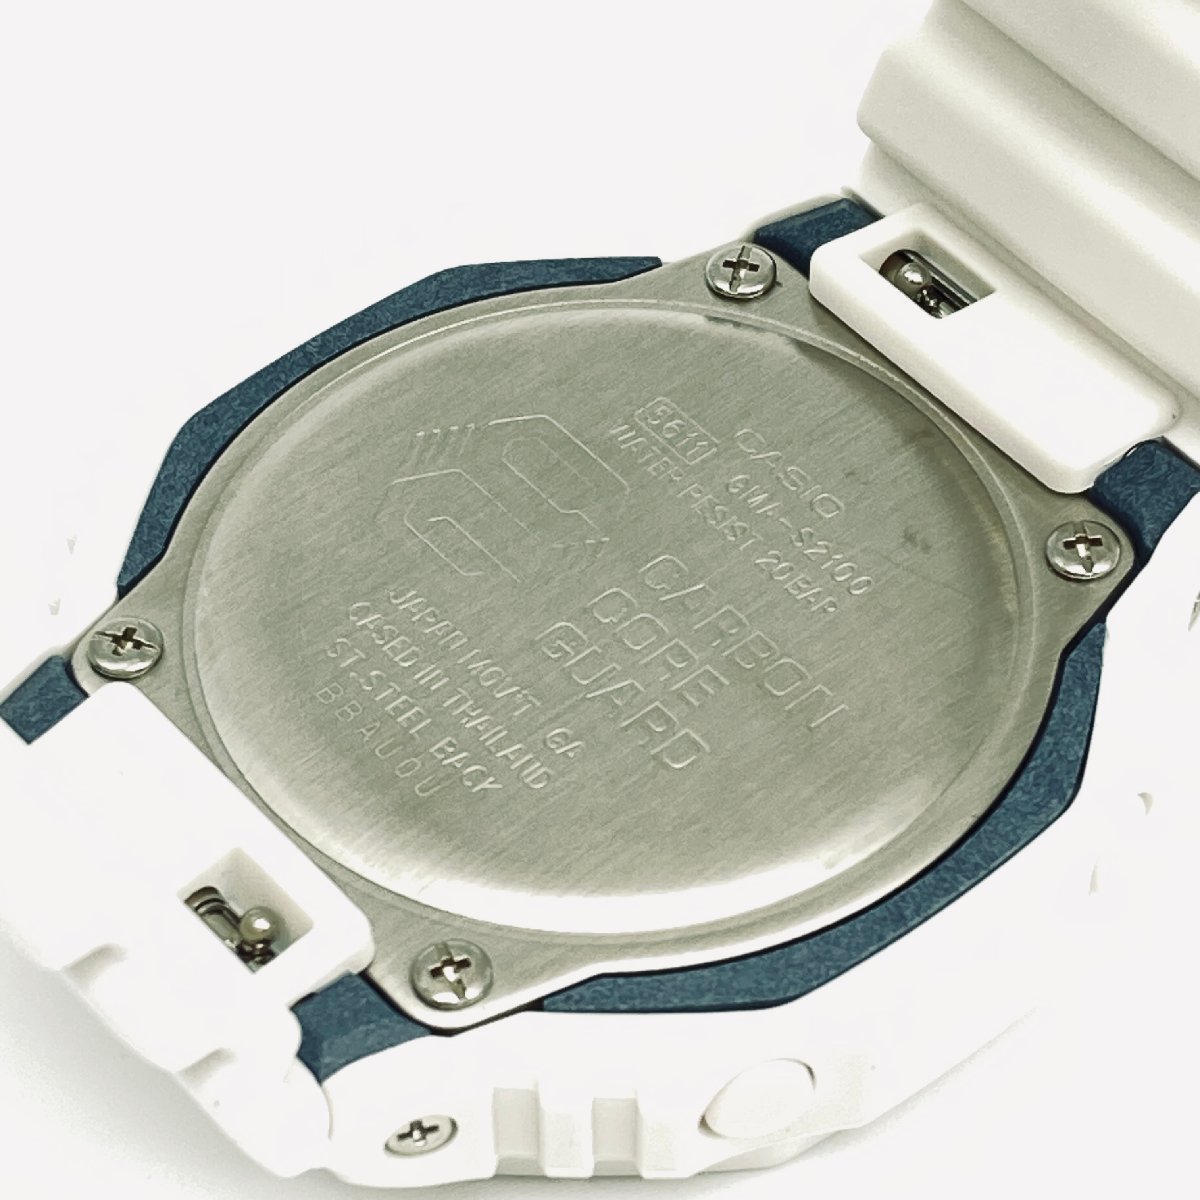 1005◎CASIO 腕時計 G-SHOCK GMA-S2100-7AJF 20気圧防水 耐衝撃性 カジュアル スポーティー デザイン メンズ ホワイト【1124】_画像5